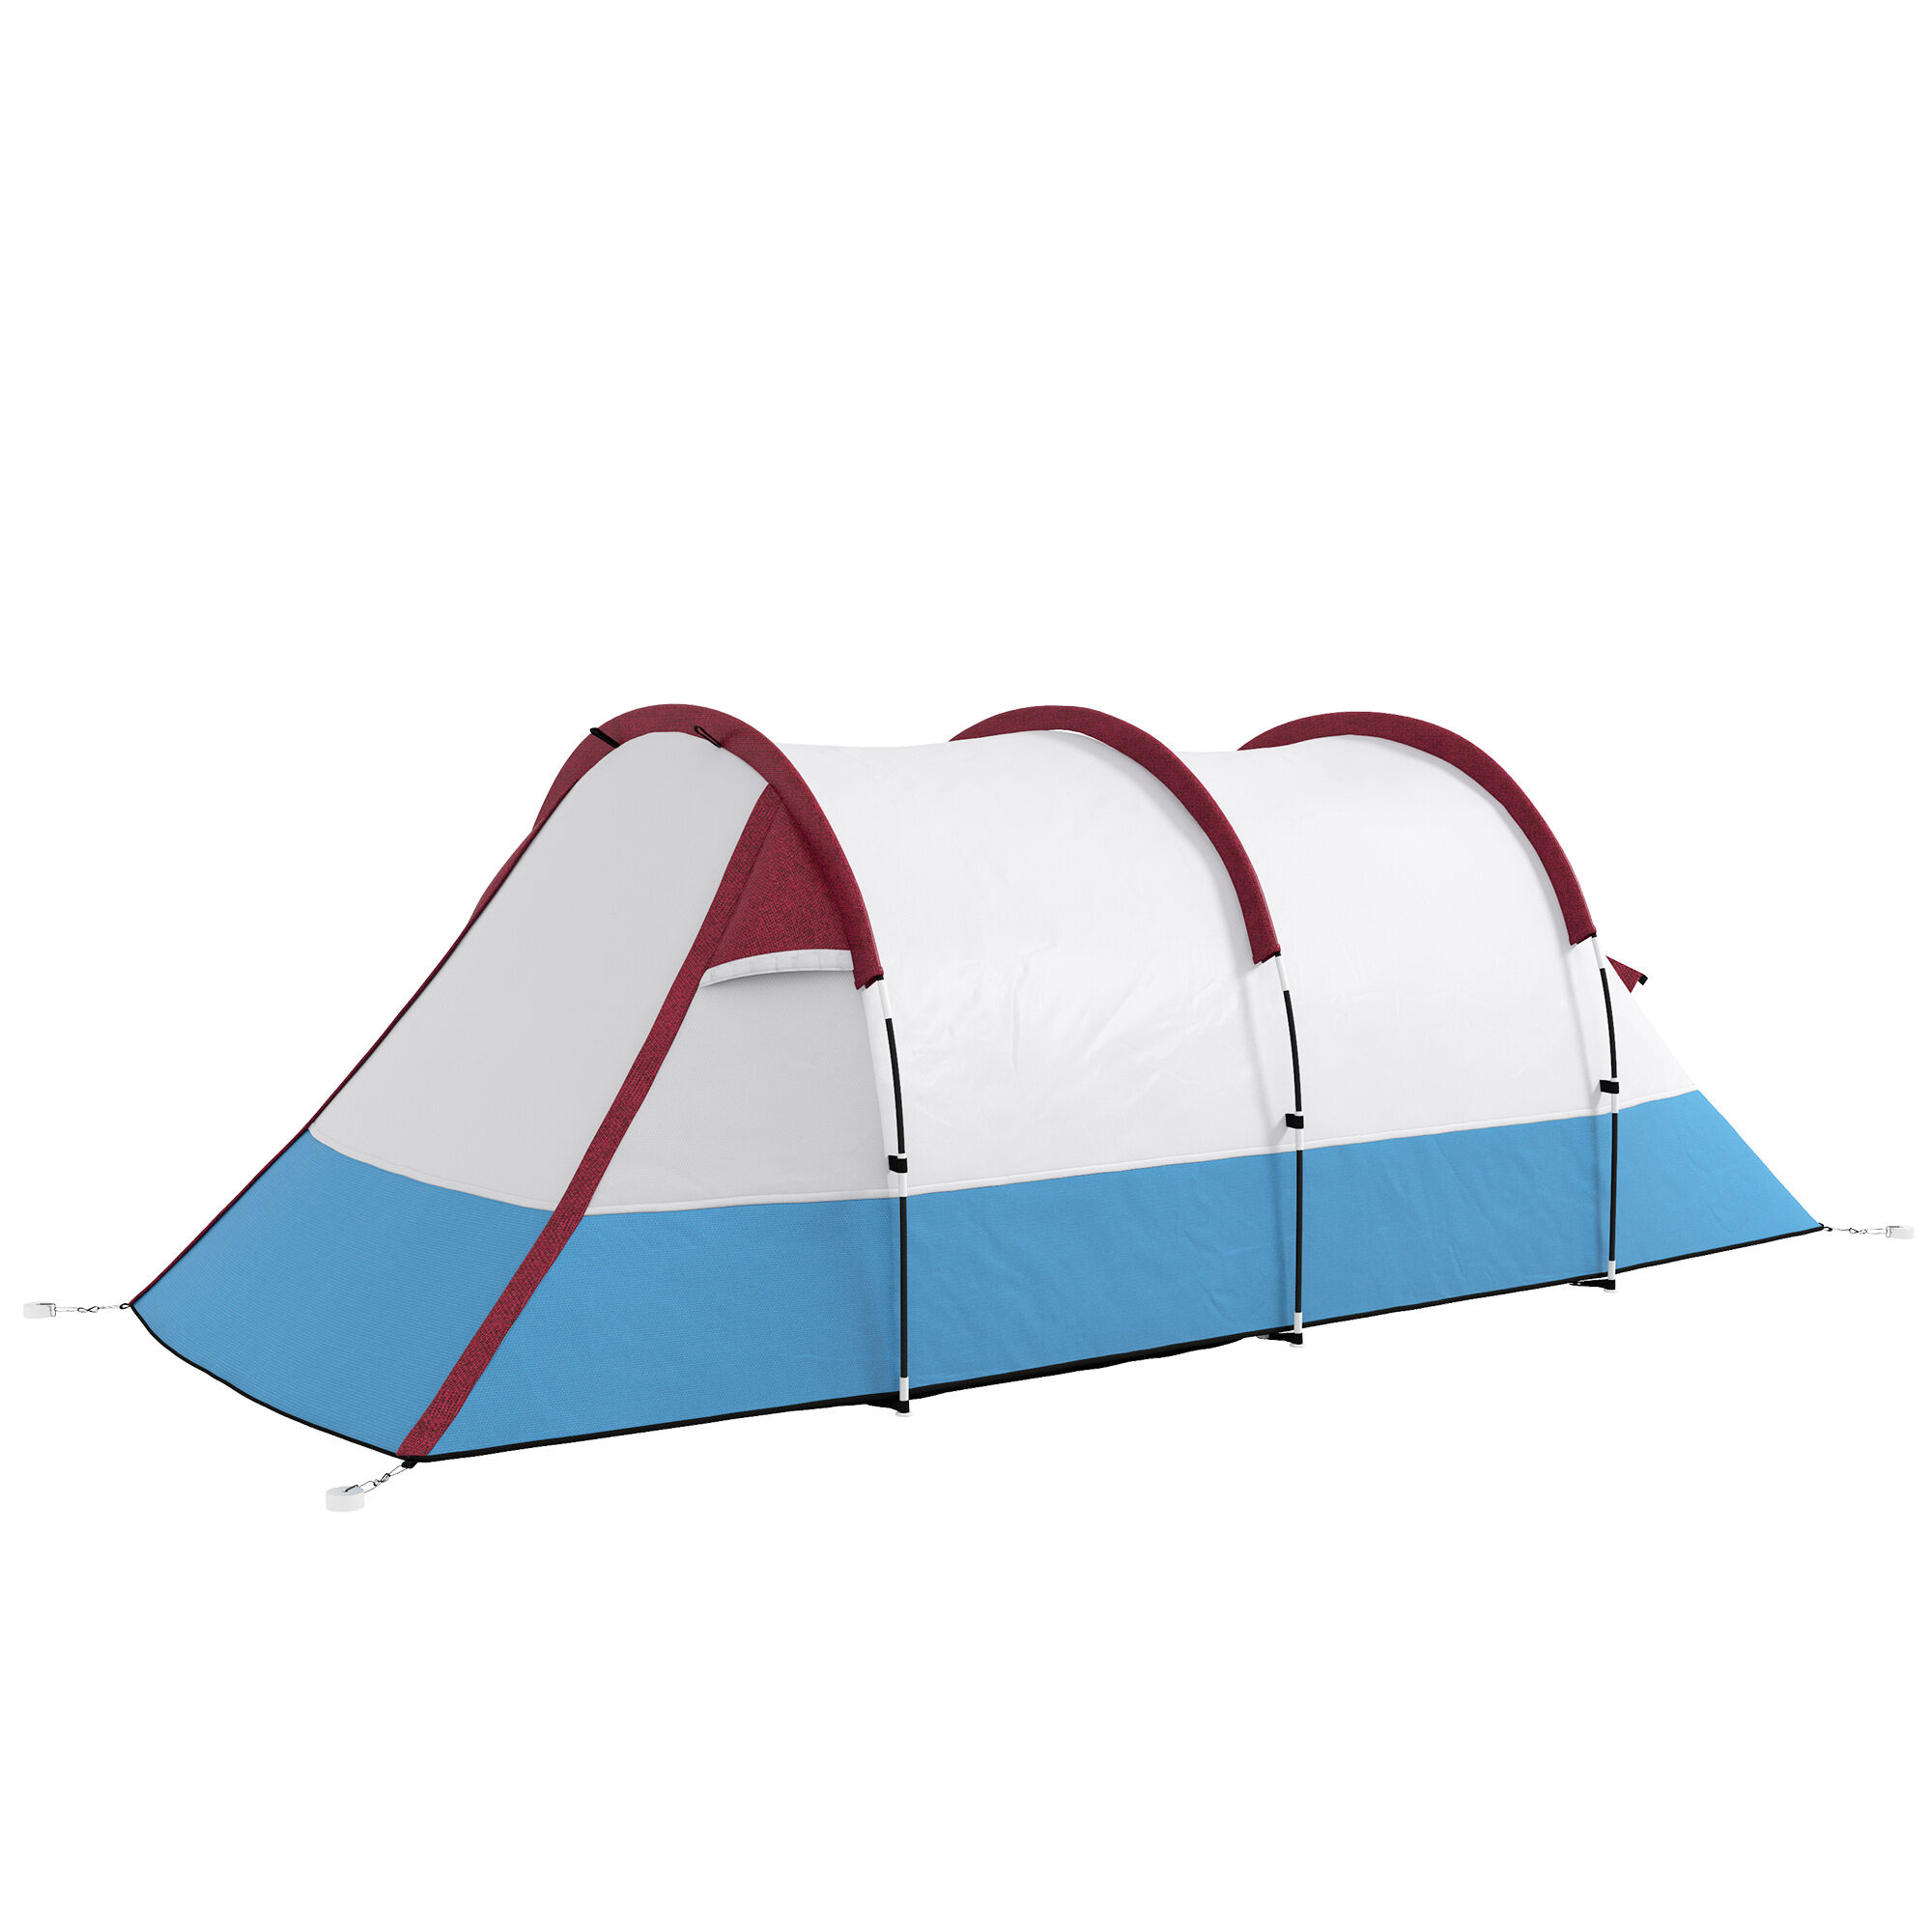 Outsunny Tenda da Campeggio Impermeabile con 2 Aree e 3 Ingressi, in Poliestere e Fibra di Vetro, 420x200x150 cm, Rosso